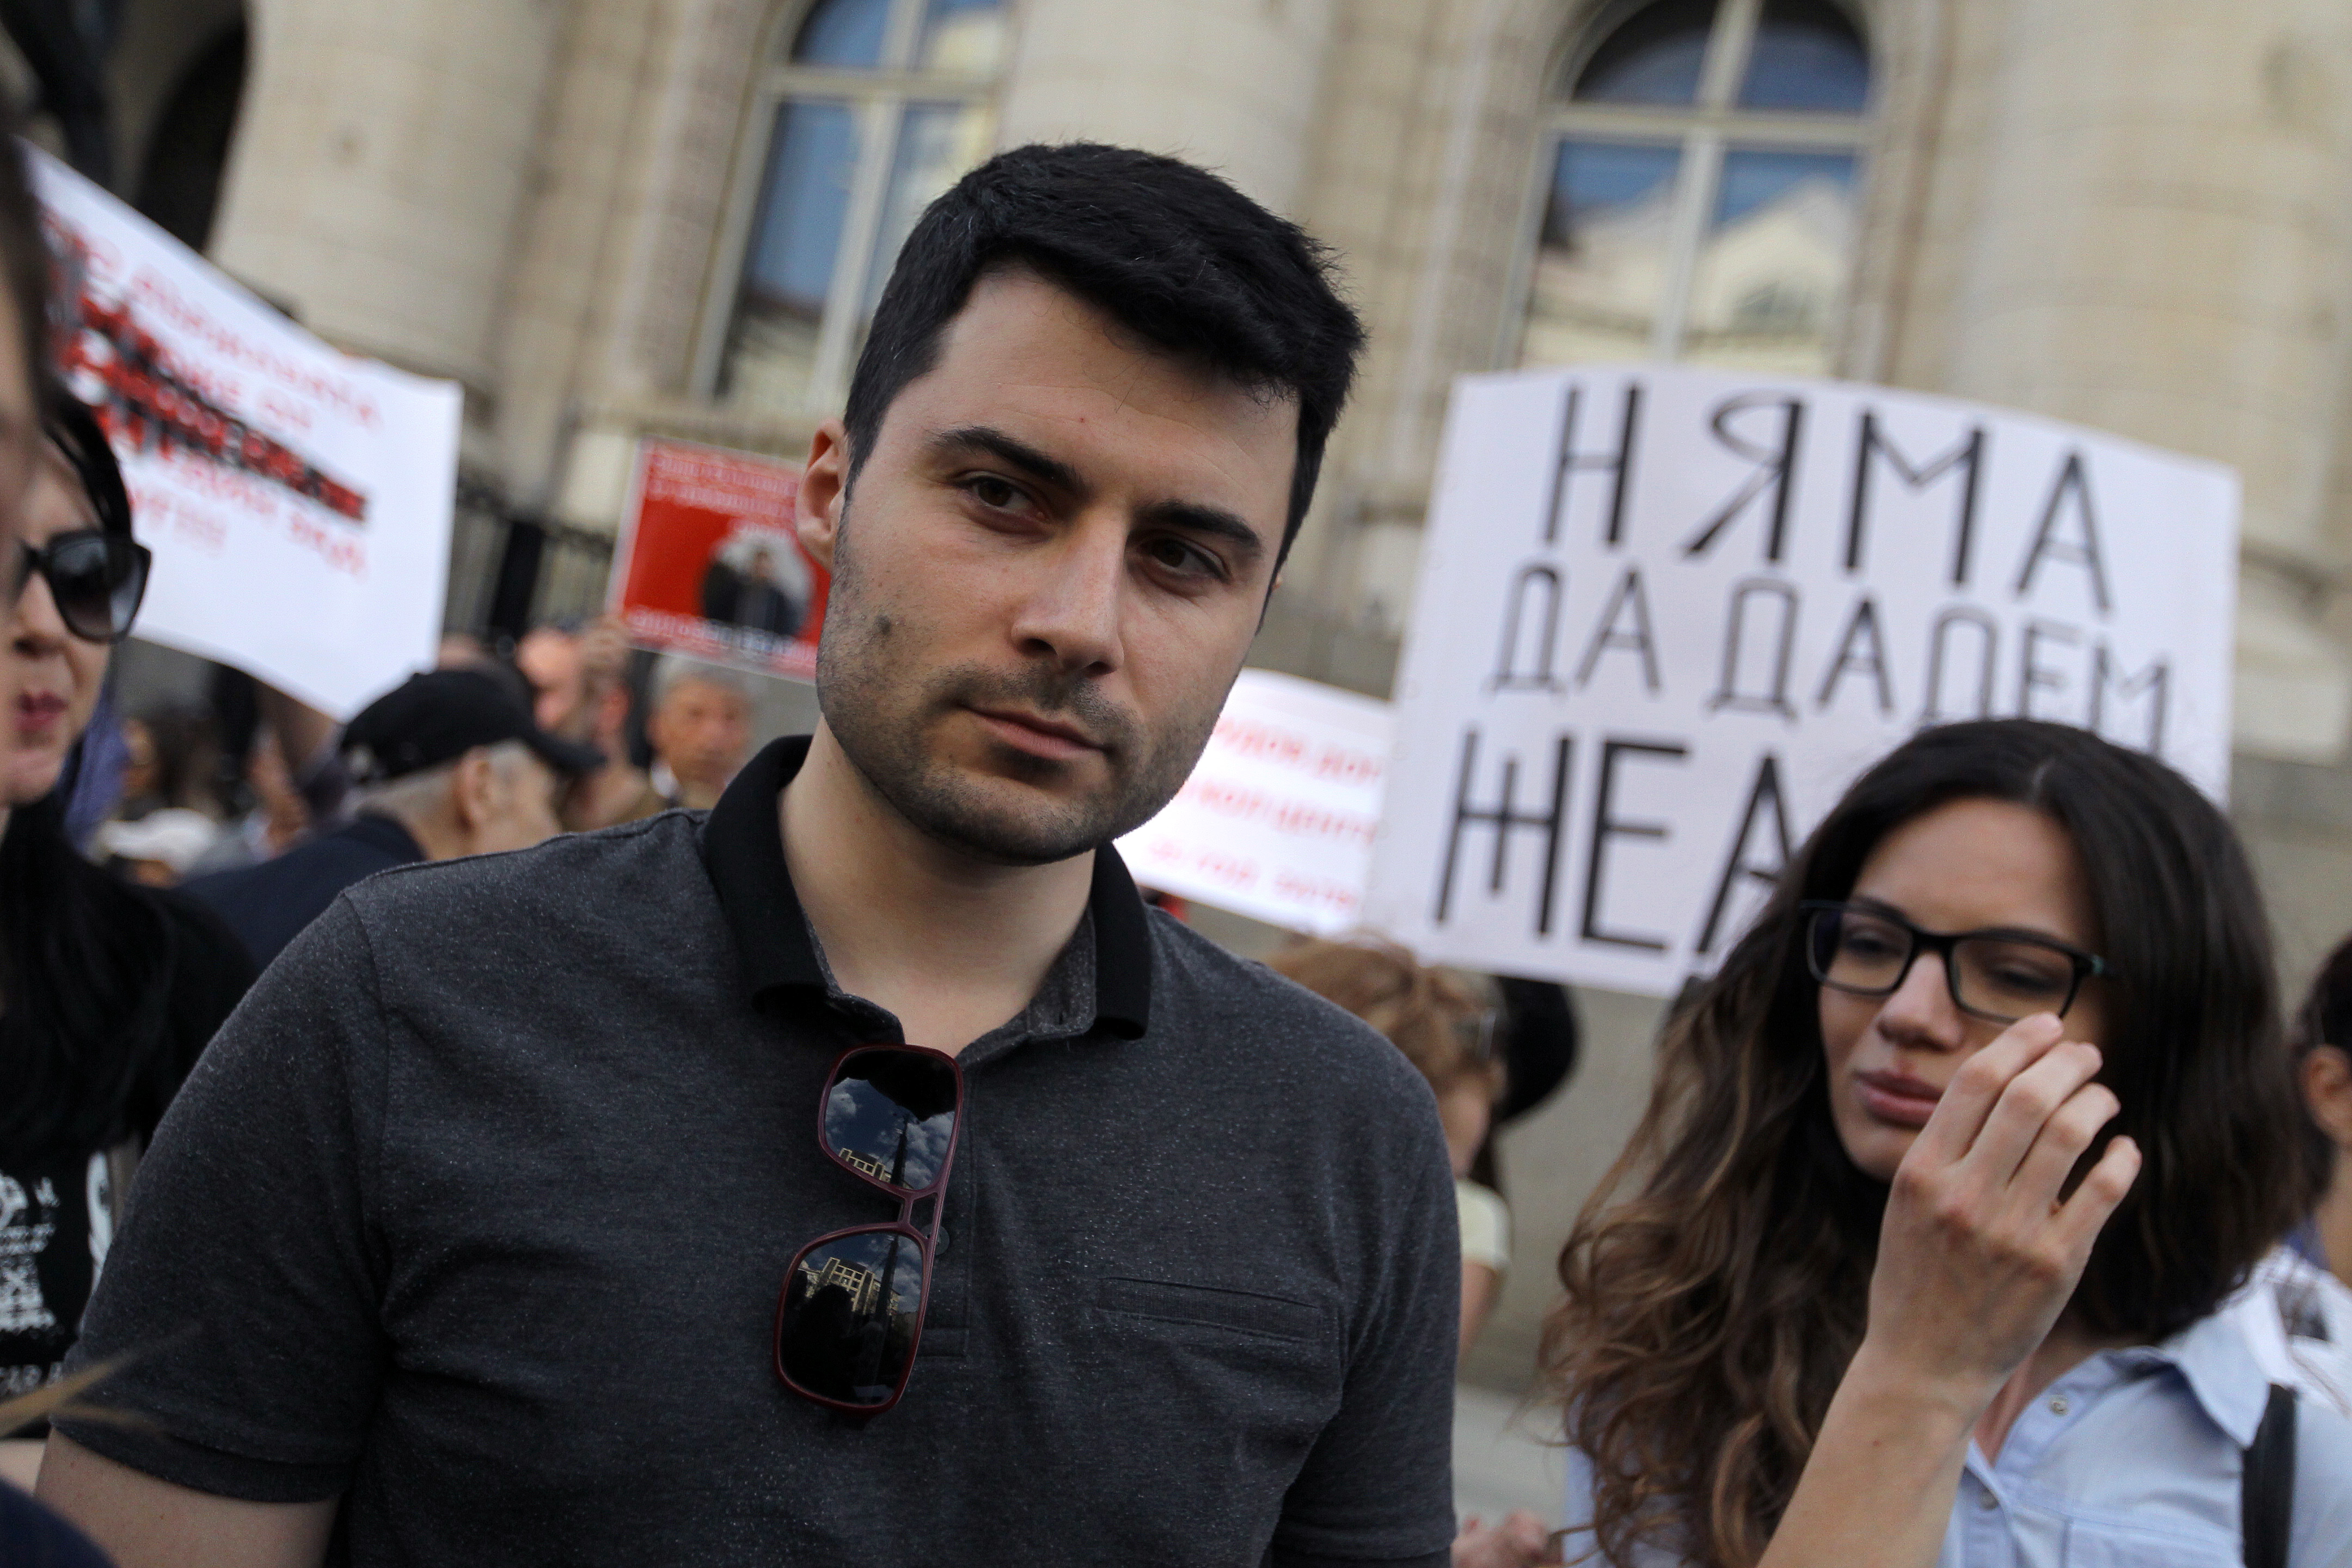 пред Съдебната палата в столицата започна протест под надслов ”Да спрем екстрадицията на Желяз Андреев”.